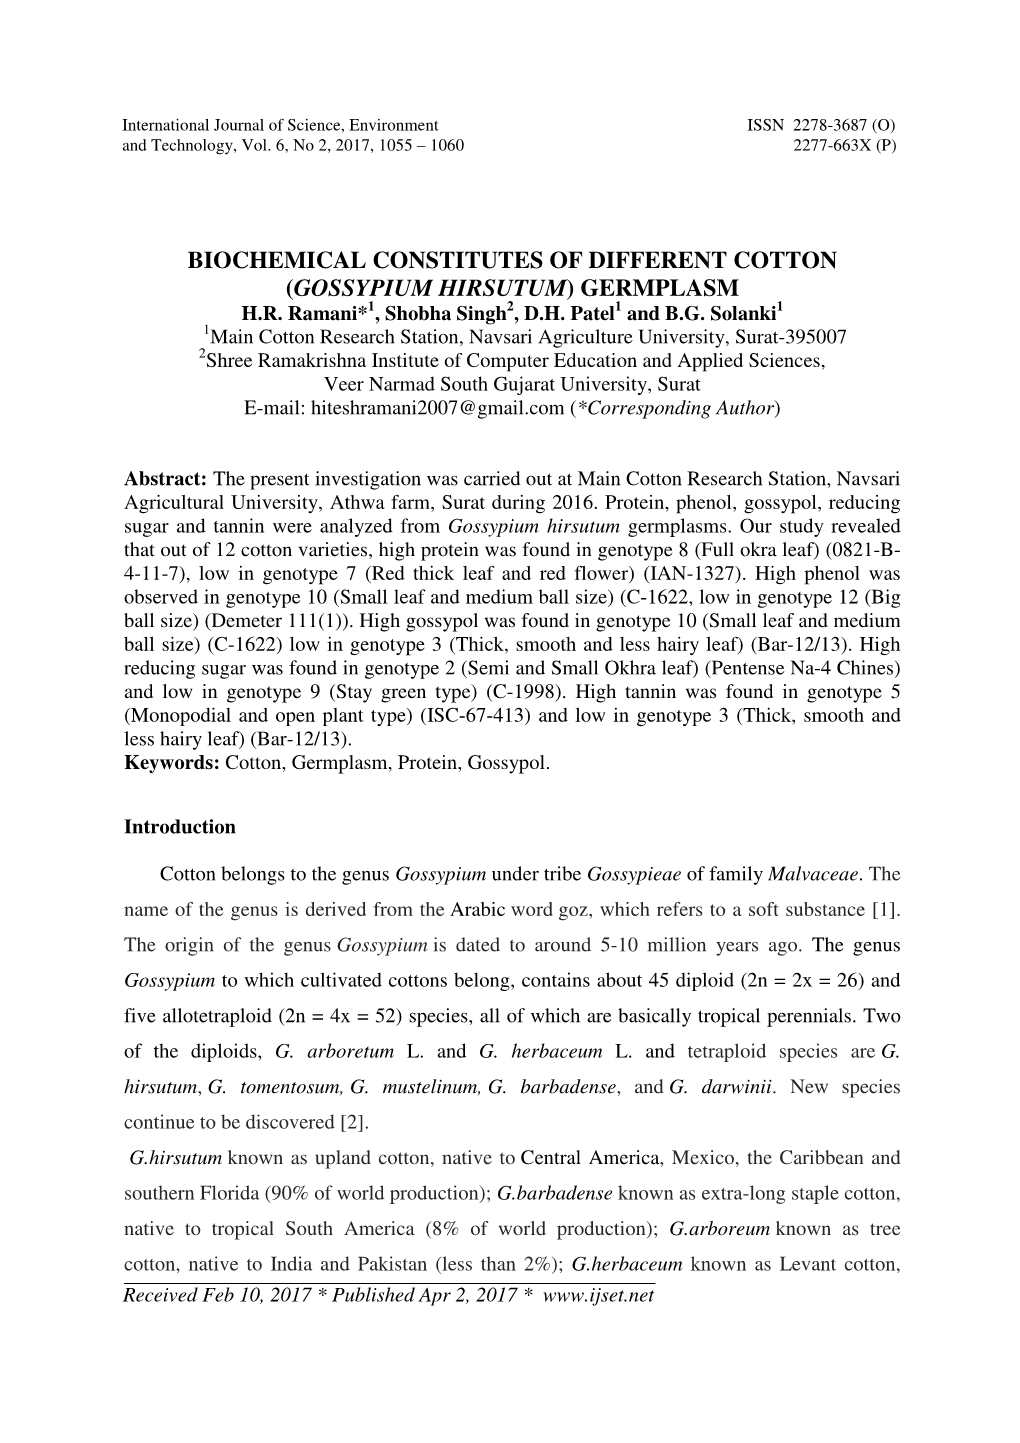 Biochemical Constitutes of Different Cotton (Gossypium Hirsutum) Germplasm H.R